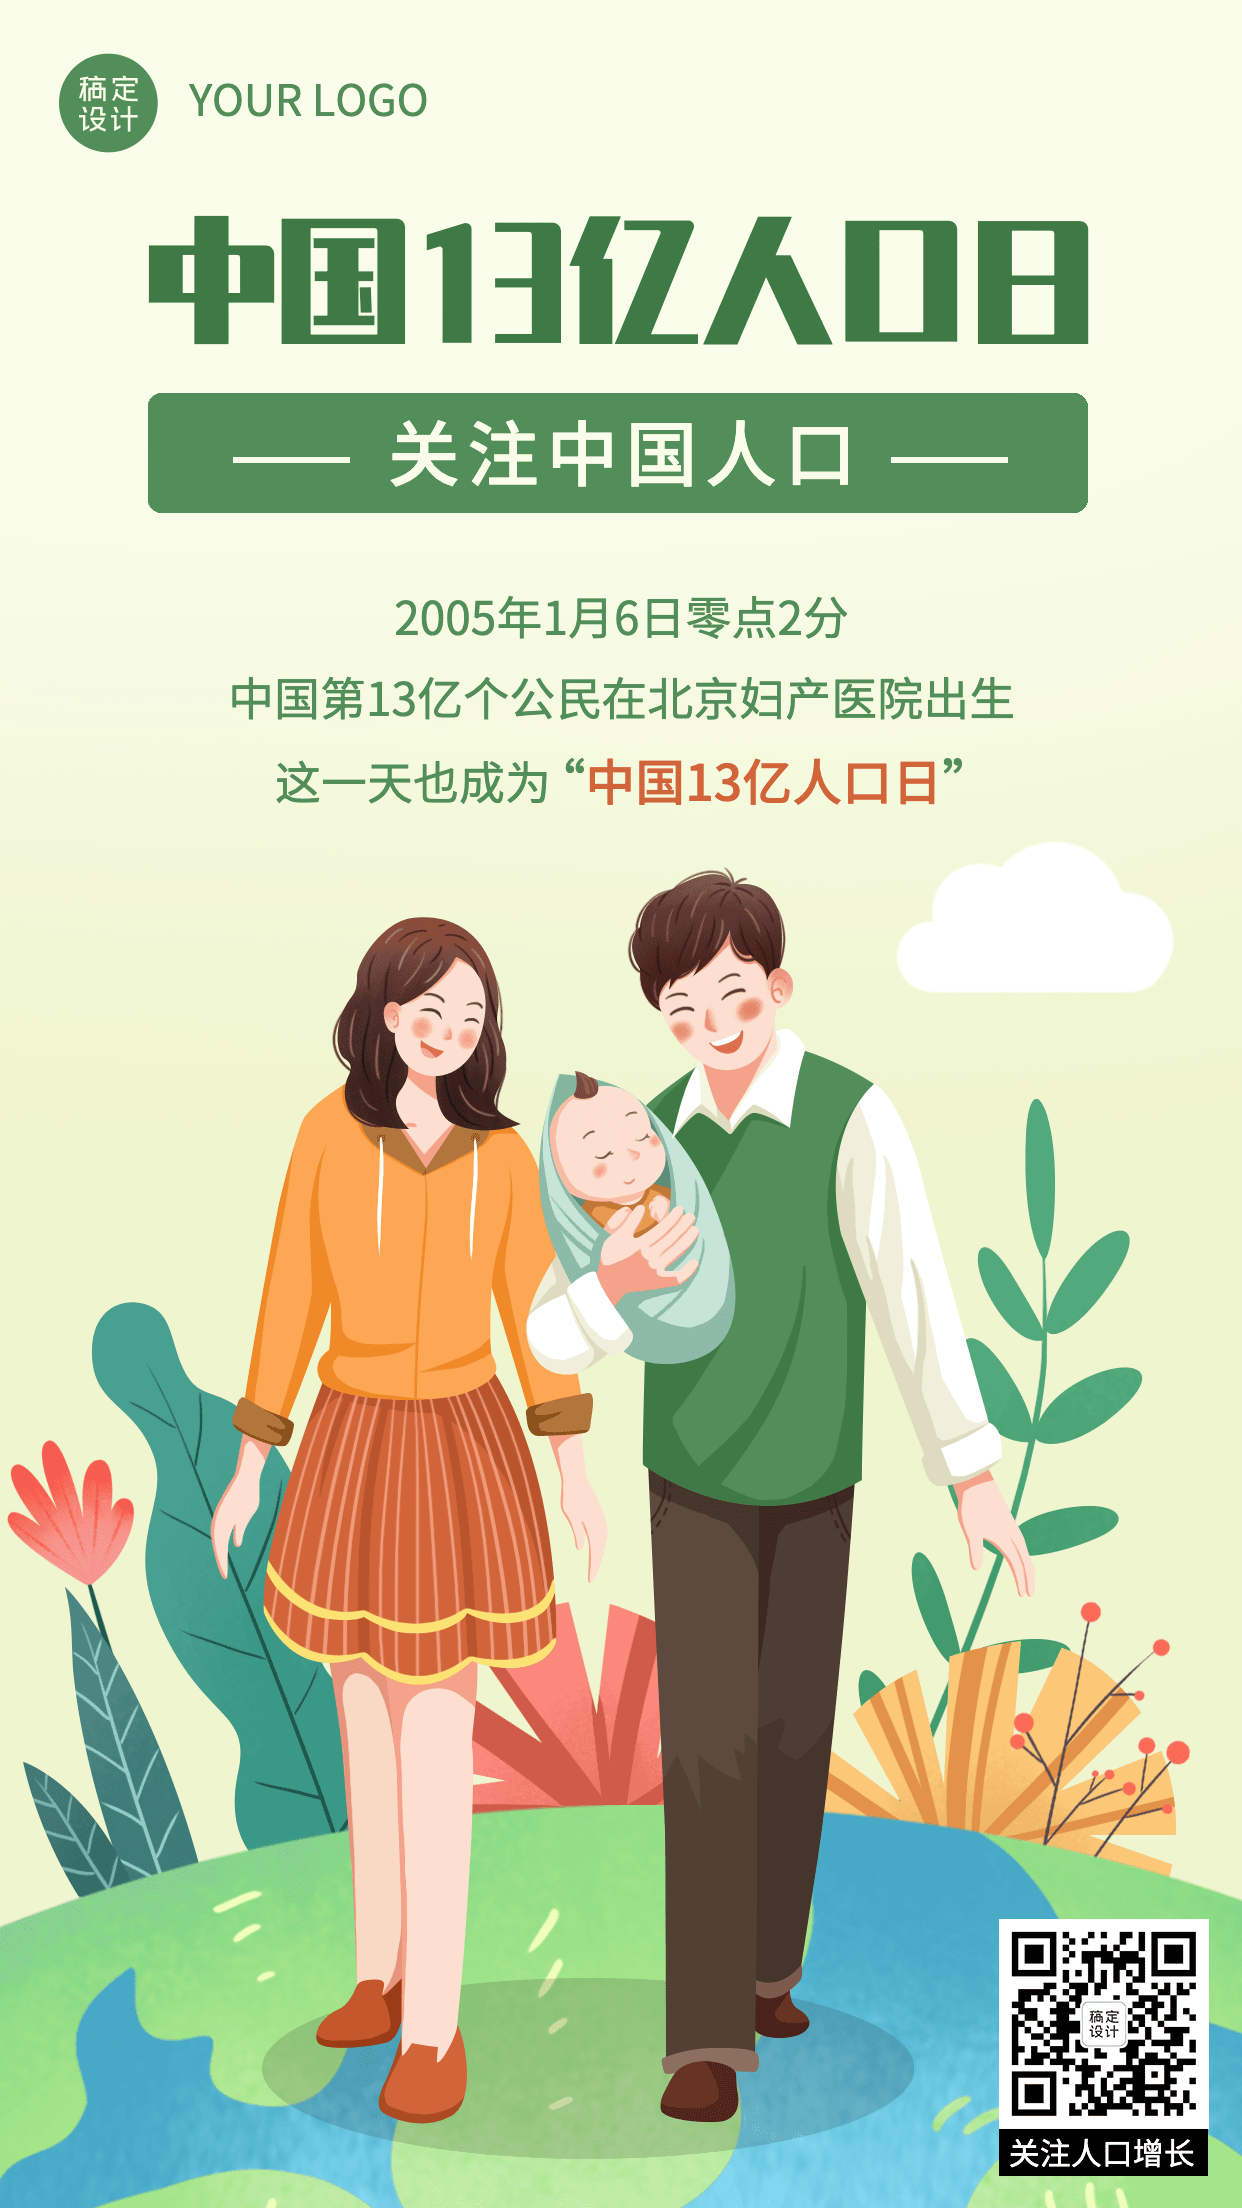 中国13亿人口纪念日节日科普手绘手机海报